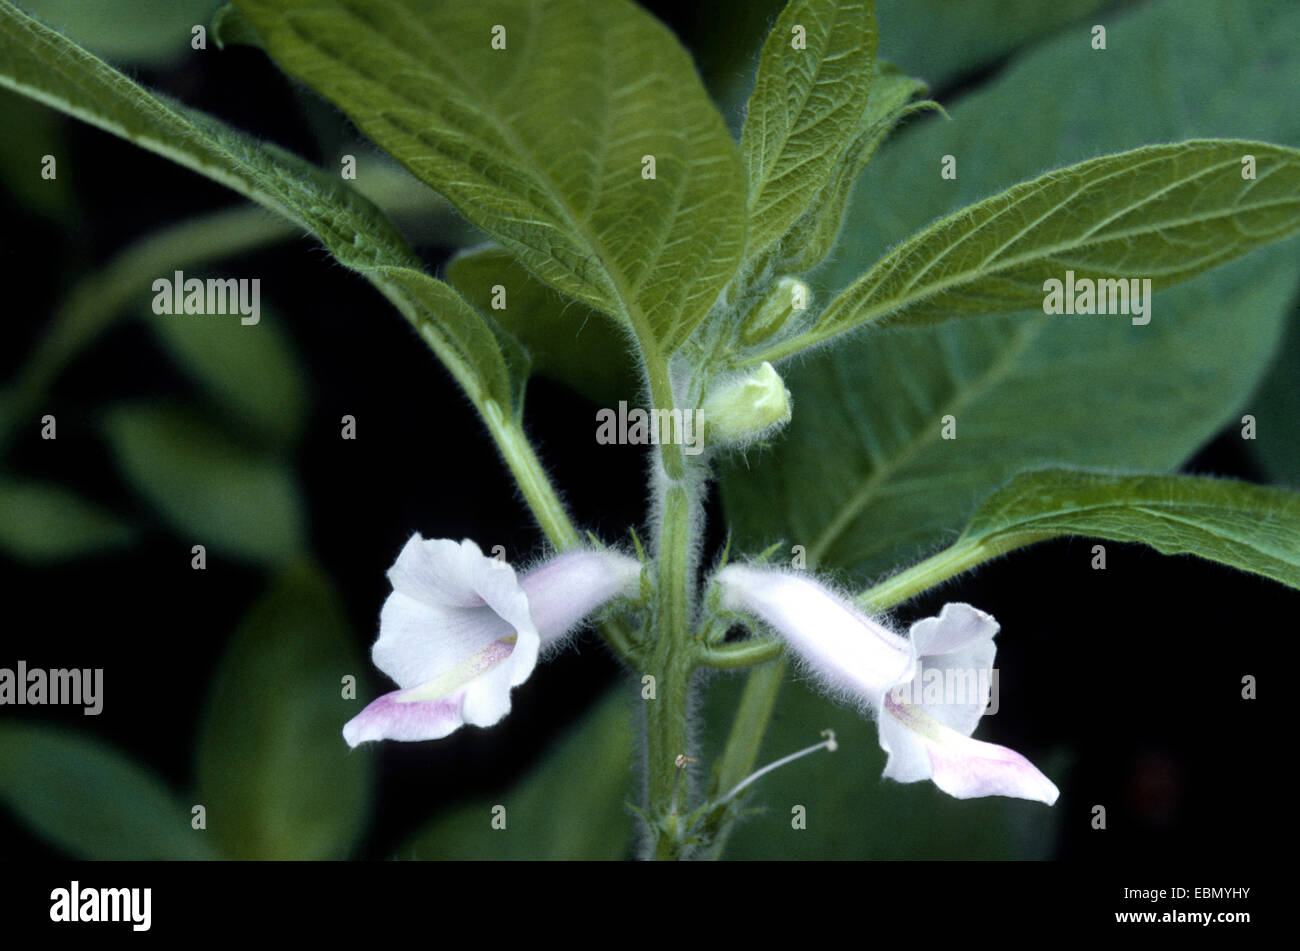 sesamum, sesame (Sesamum indicum), blooming plant Stock Photo